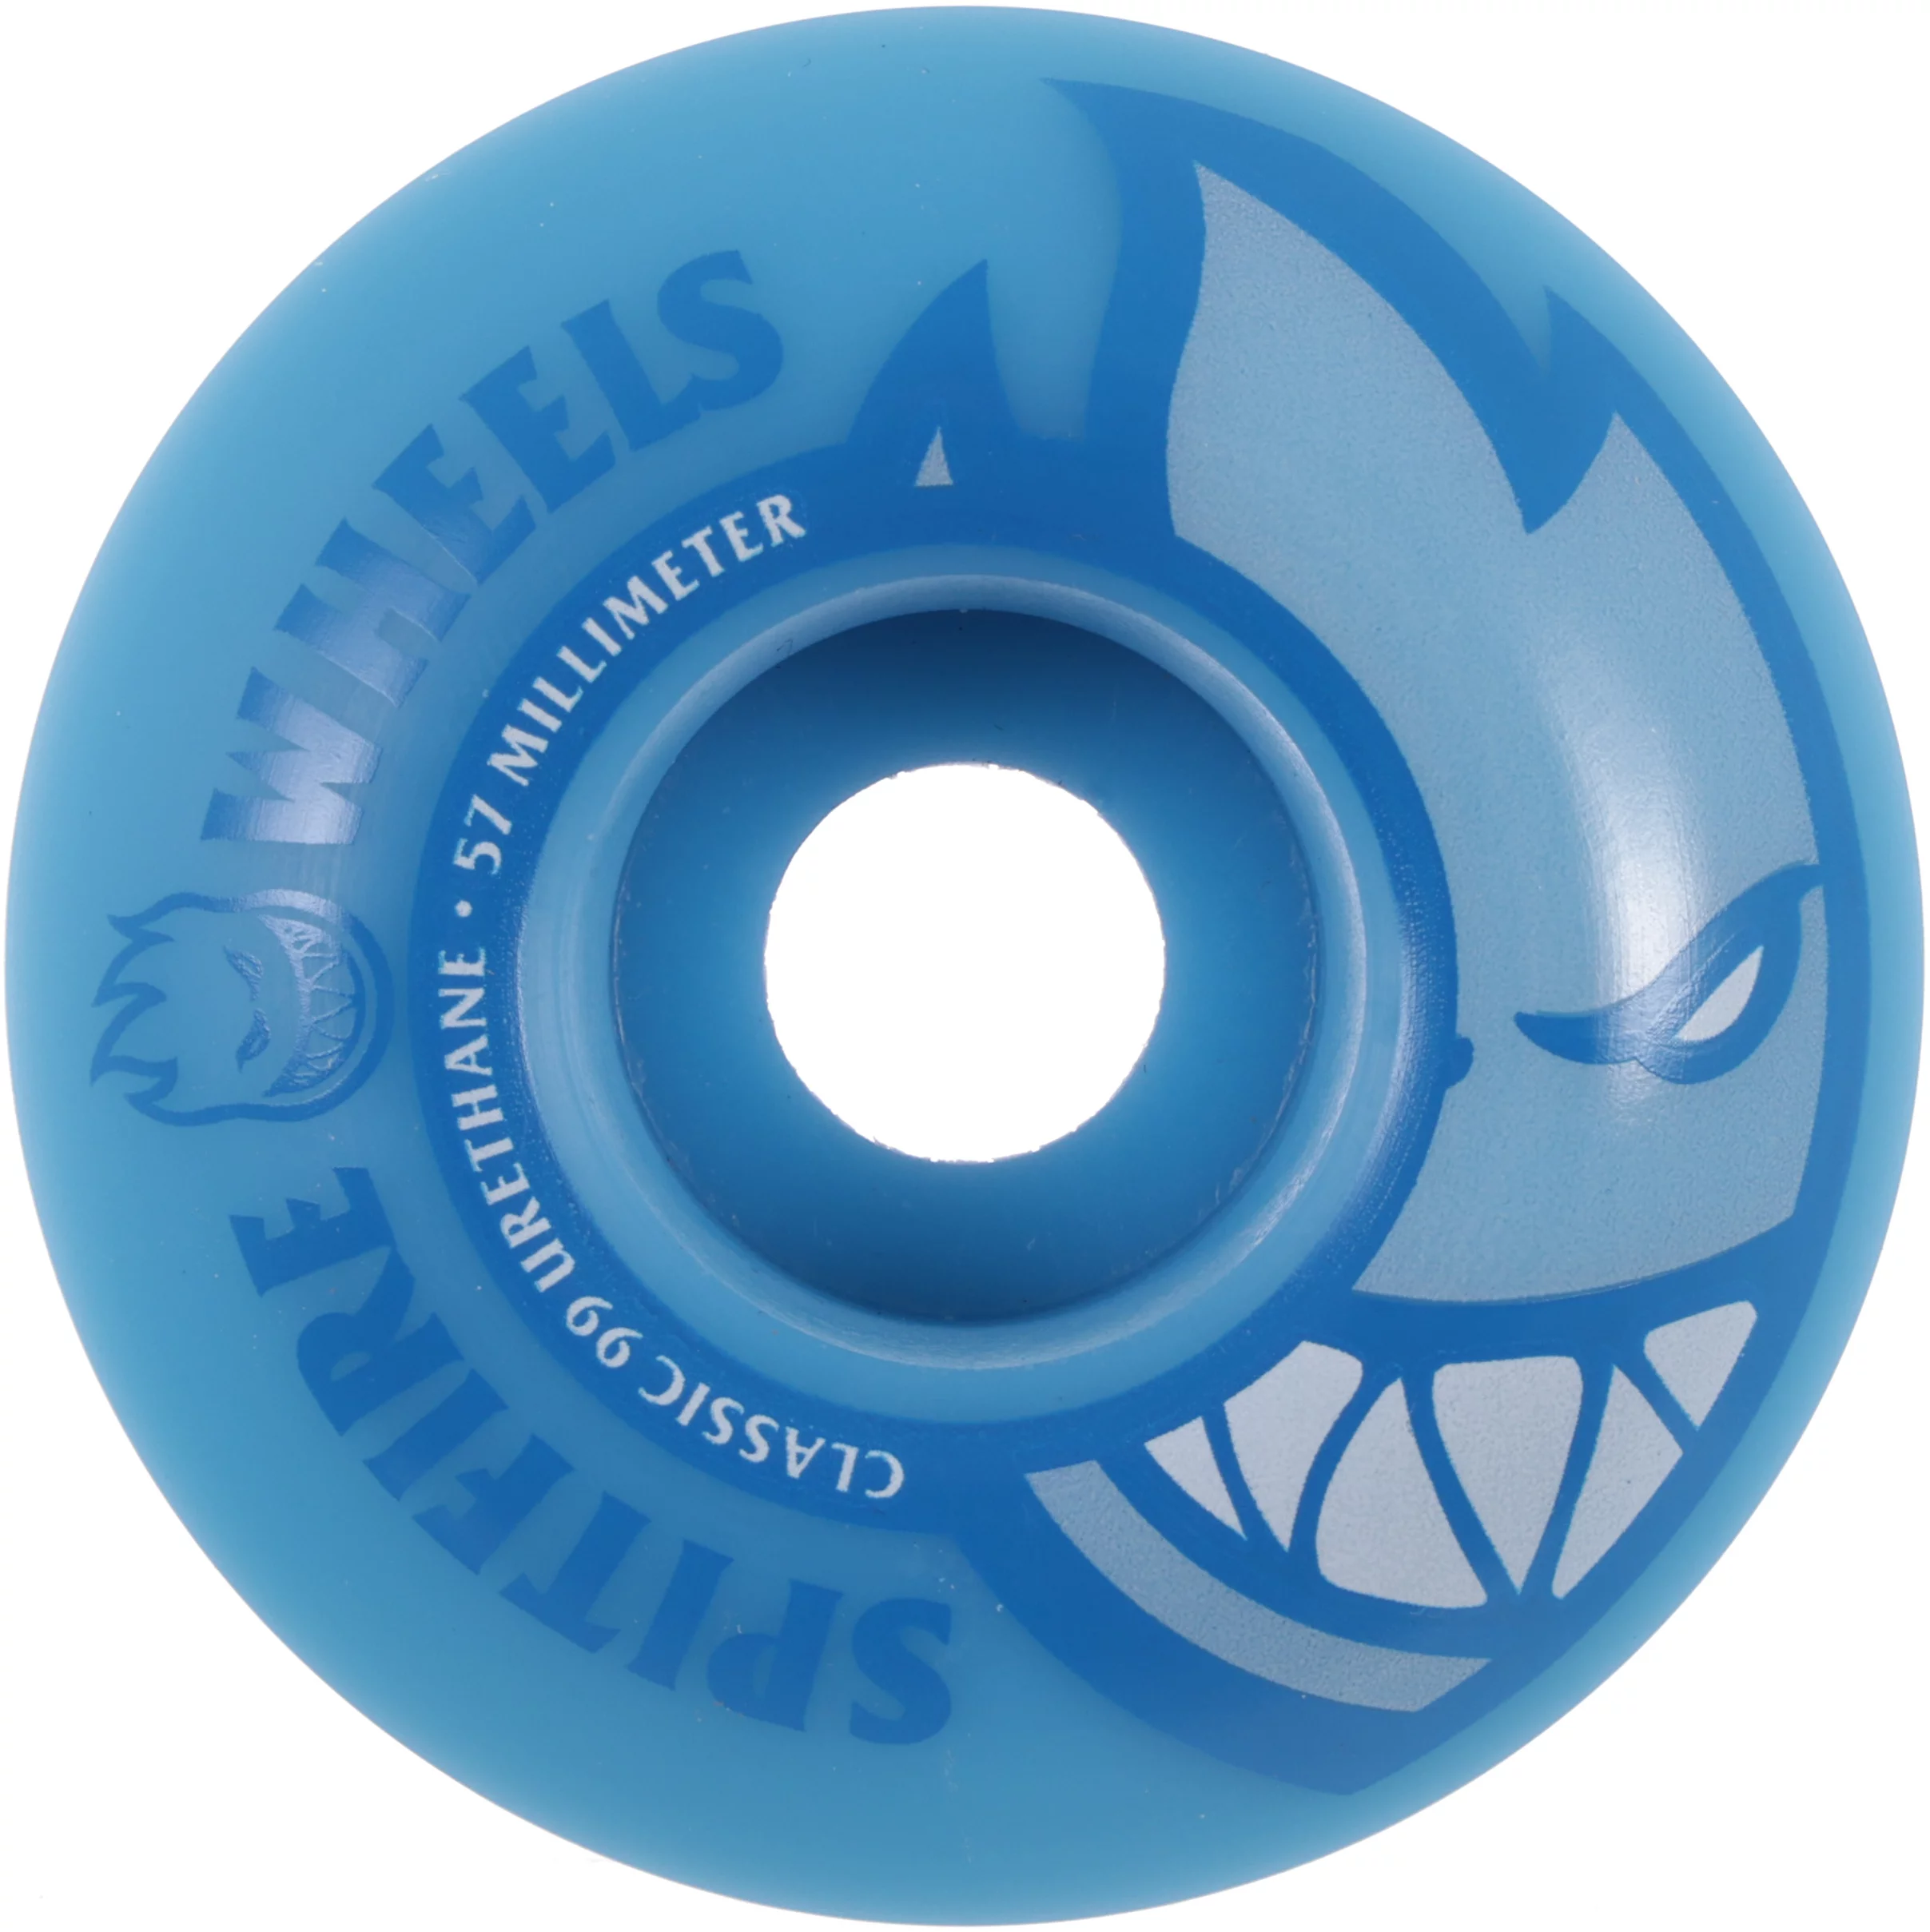 Spitfire Bighead Neon Blue 57mm Skateboard Wheels